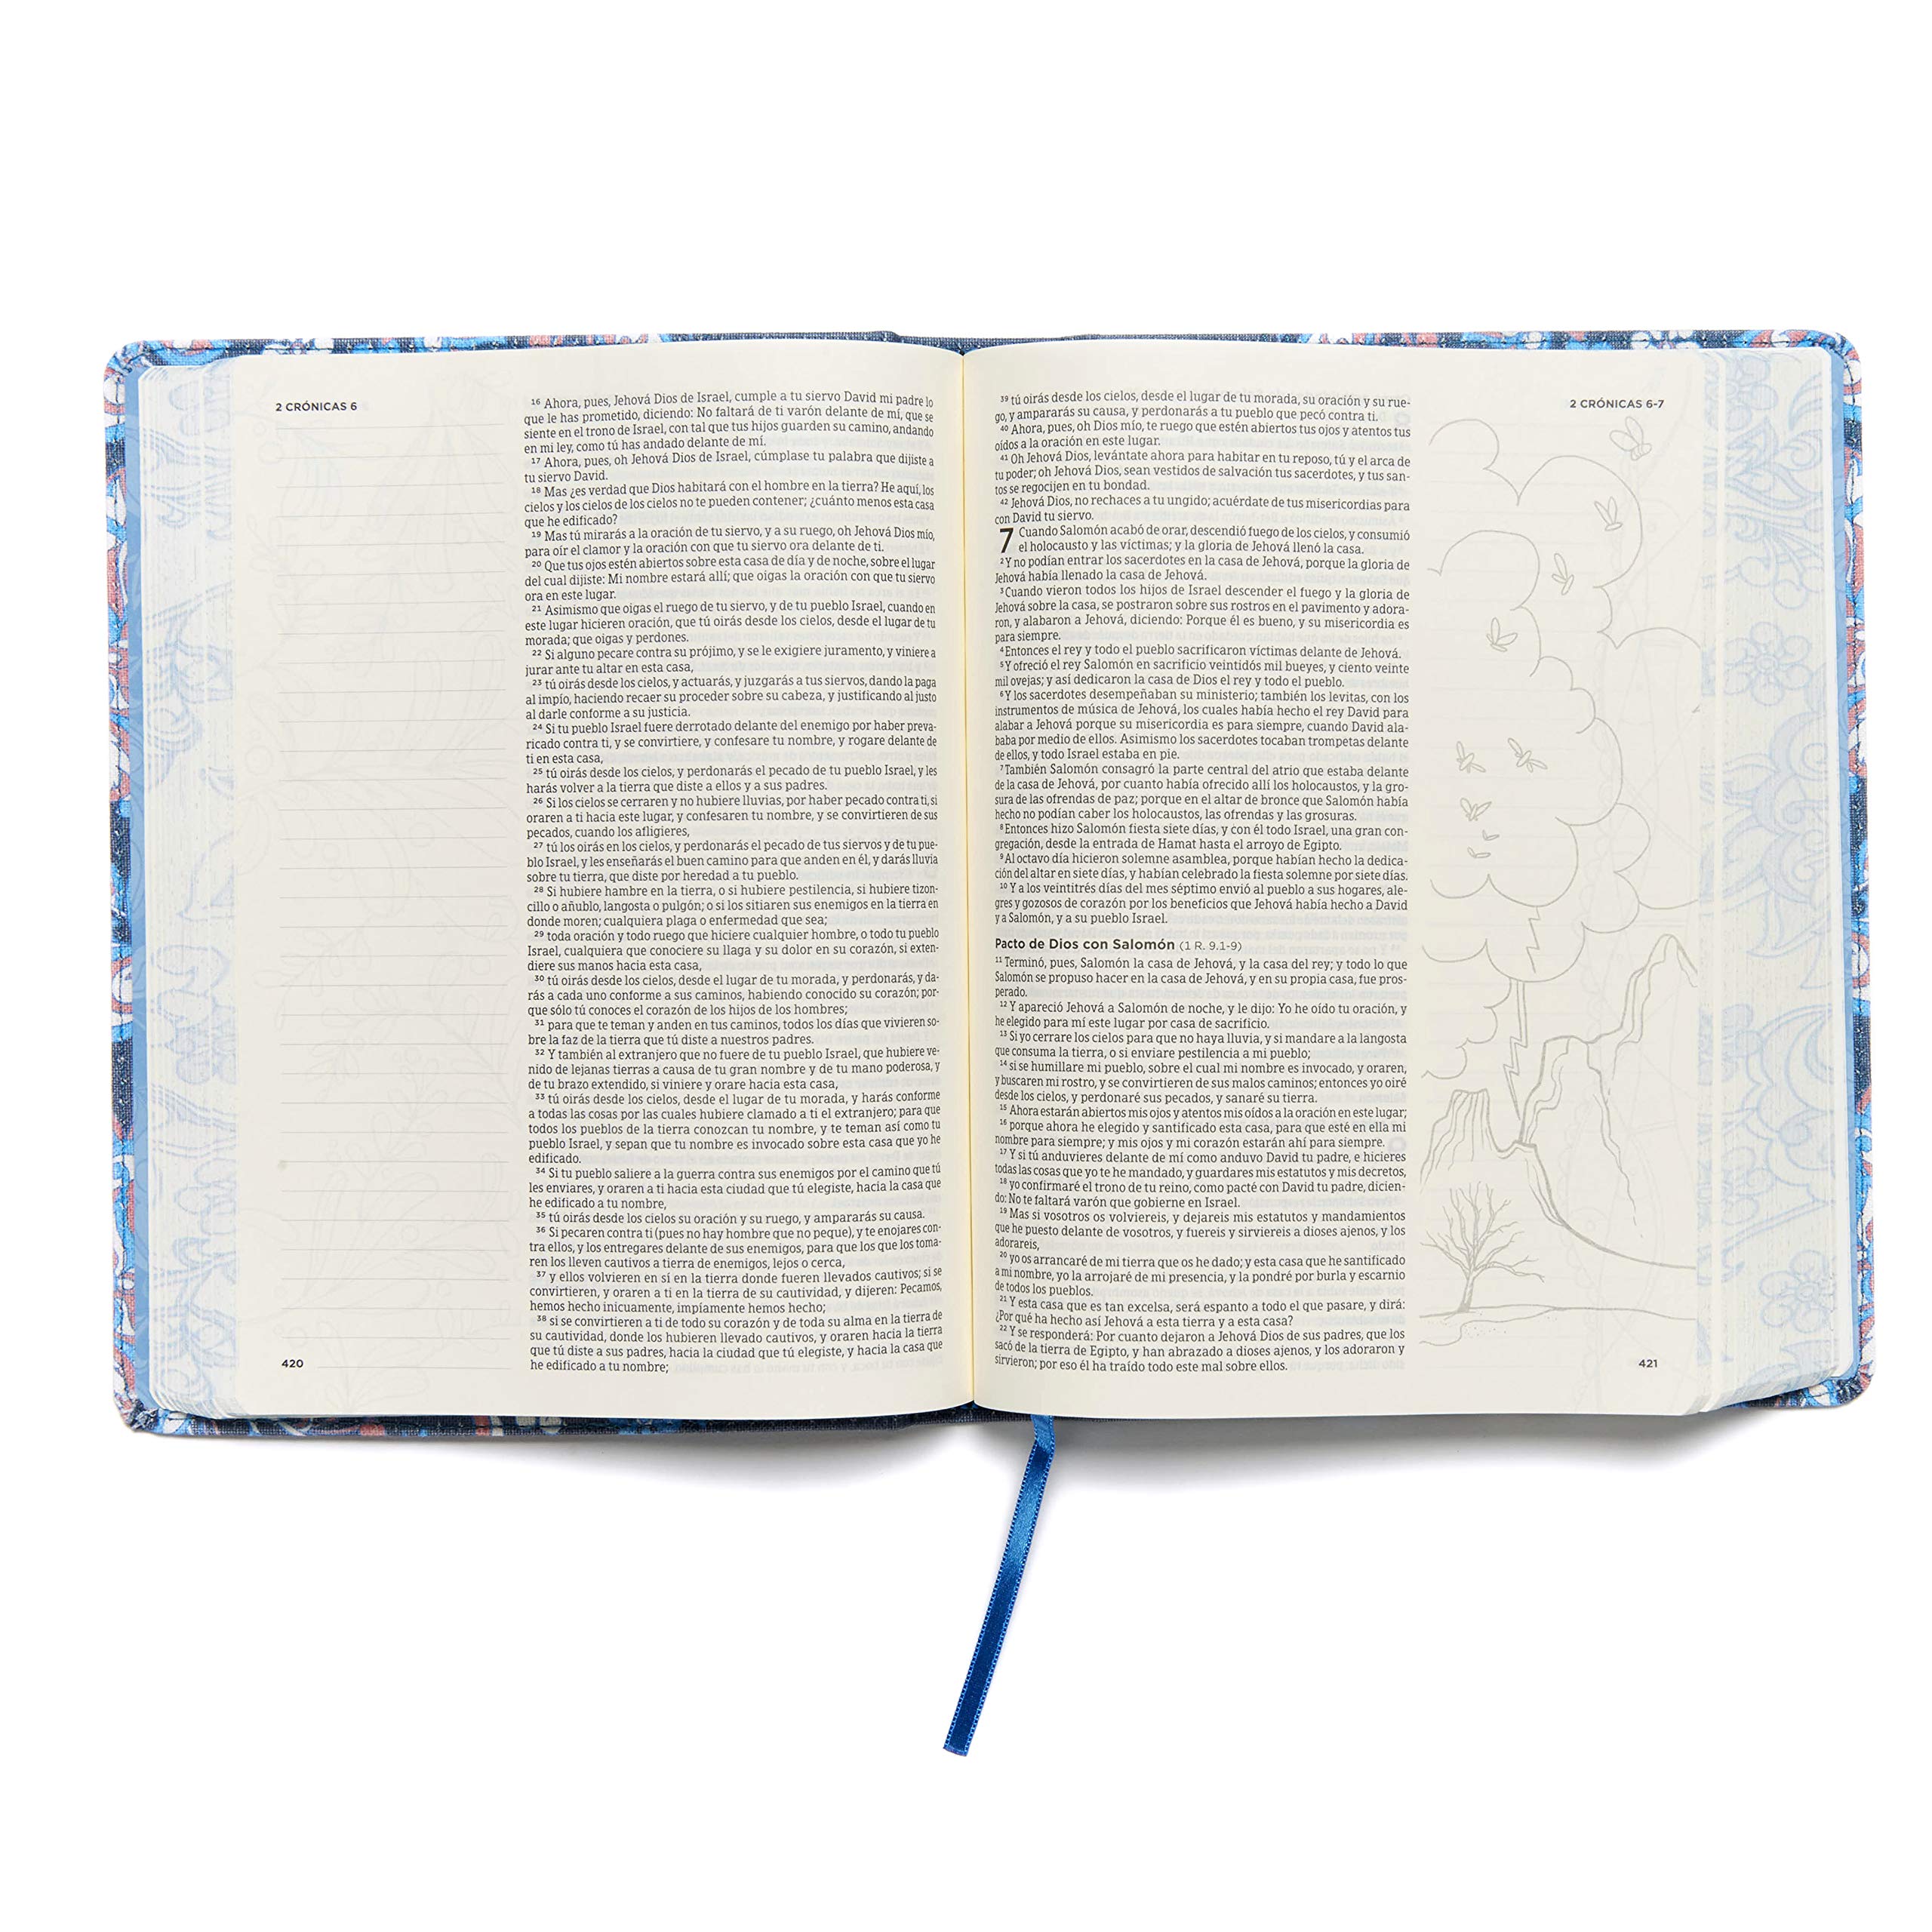 Biblia de Apuntes Edición Ilustrada Tela en Rosado y Azul RVR60 - Librería Libros Cristianos - Biblia